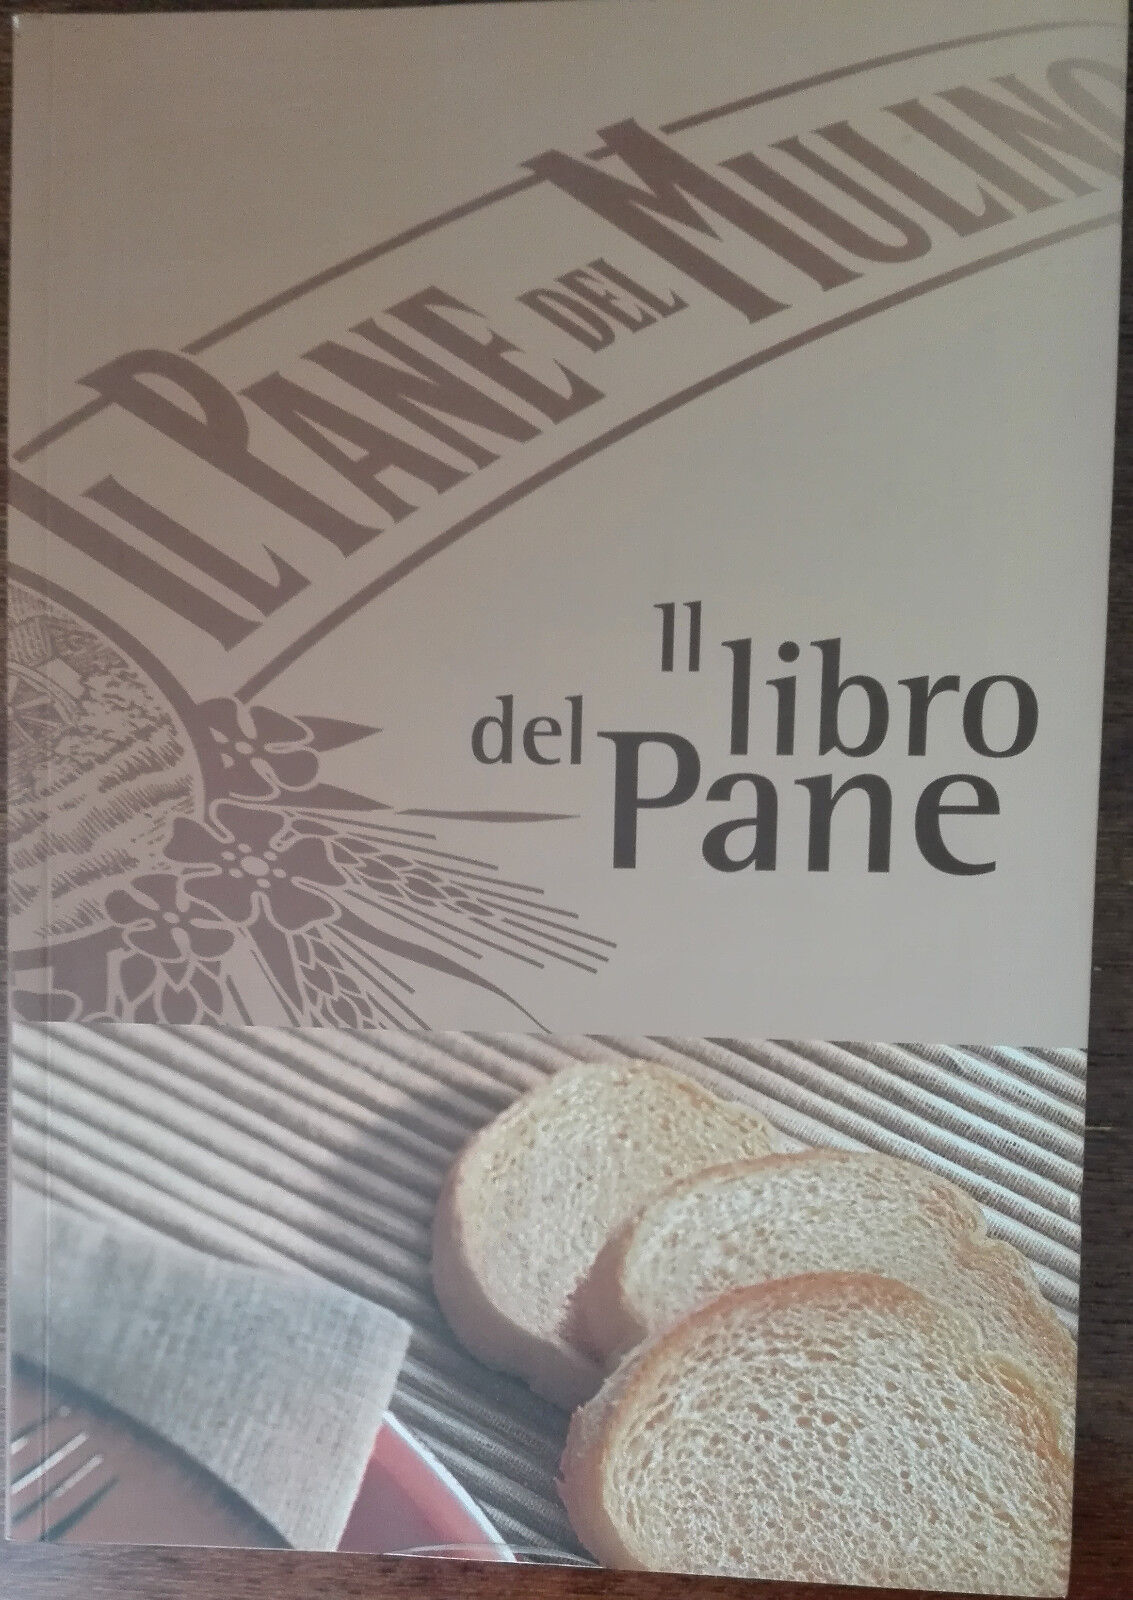 Il libro del pane - Mariarosa Schiaffino - Dm group,2005 - A